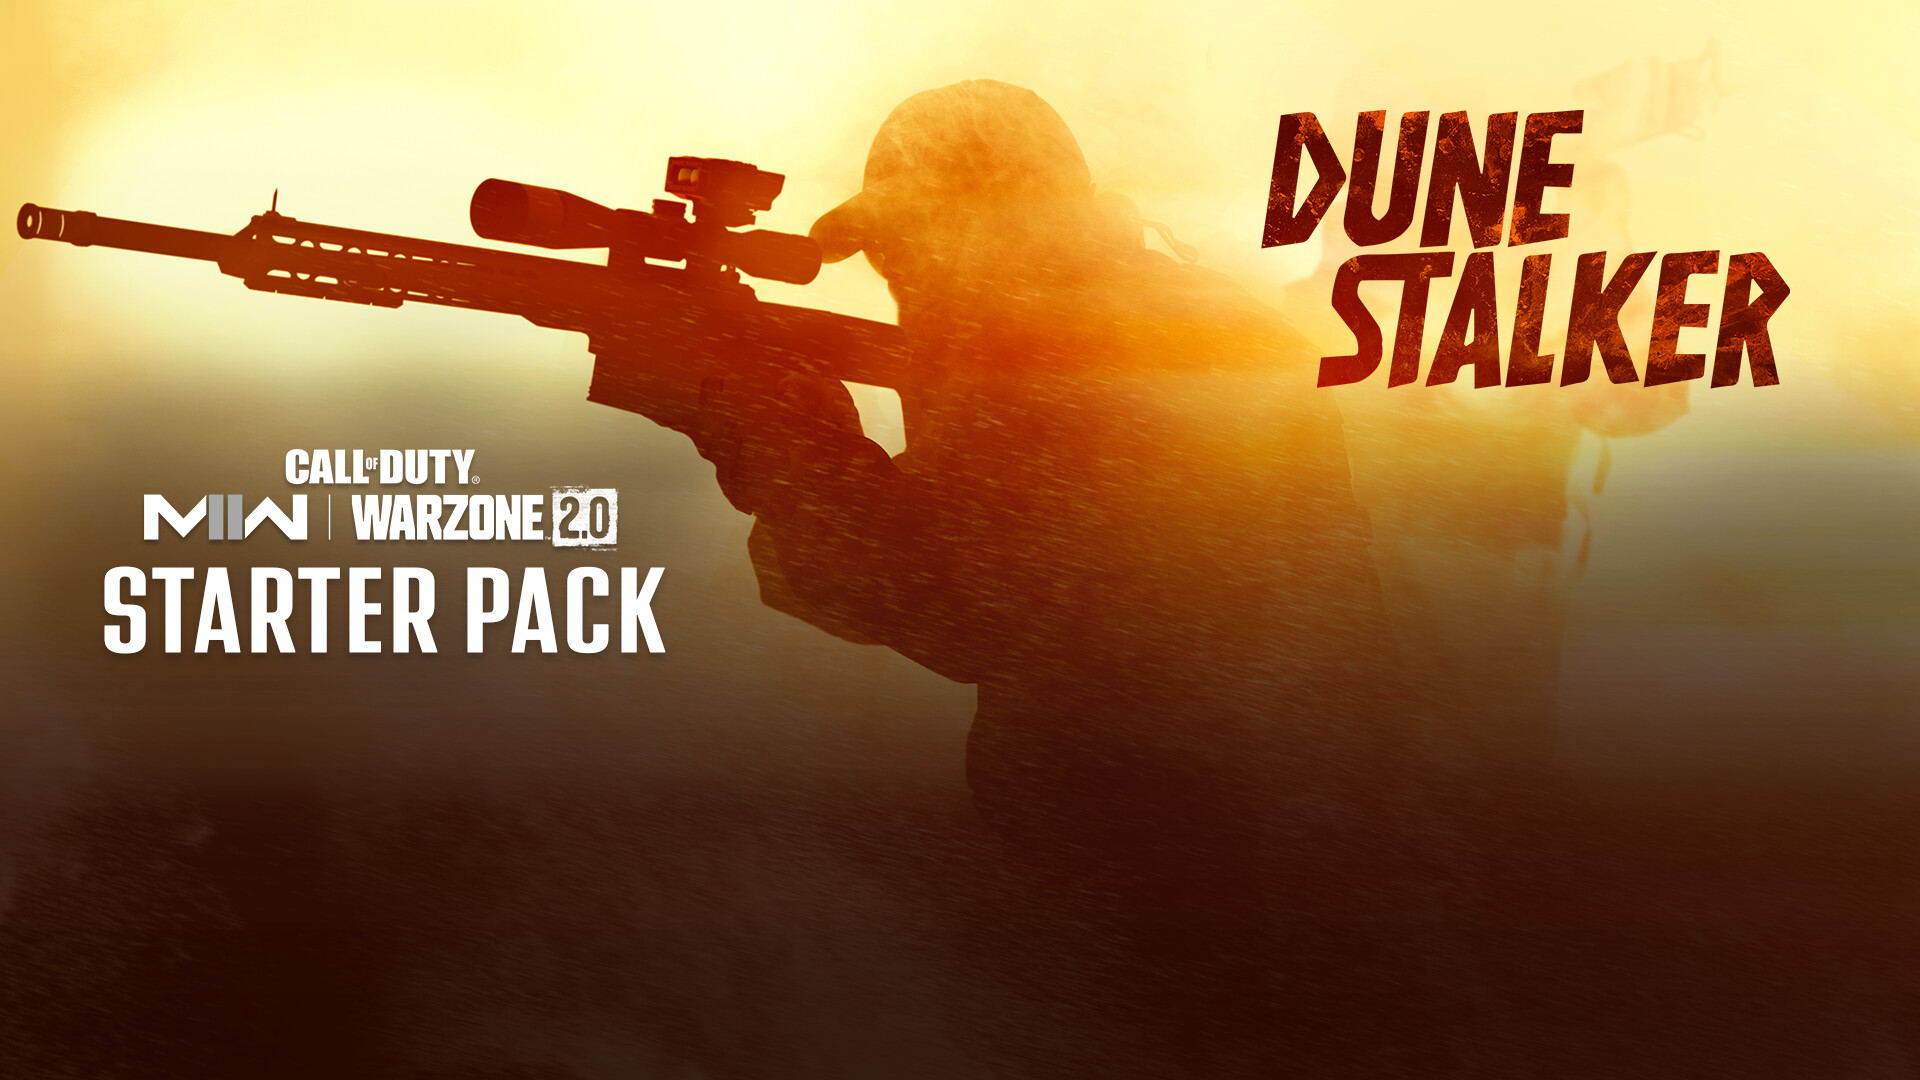 Call of Duty: MW II - Dune Stalker: Starter Pack